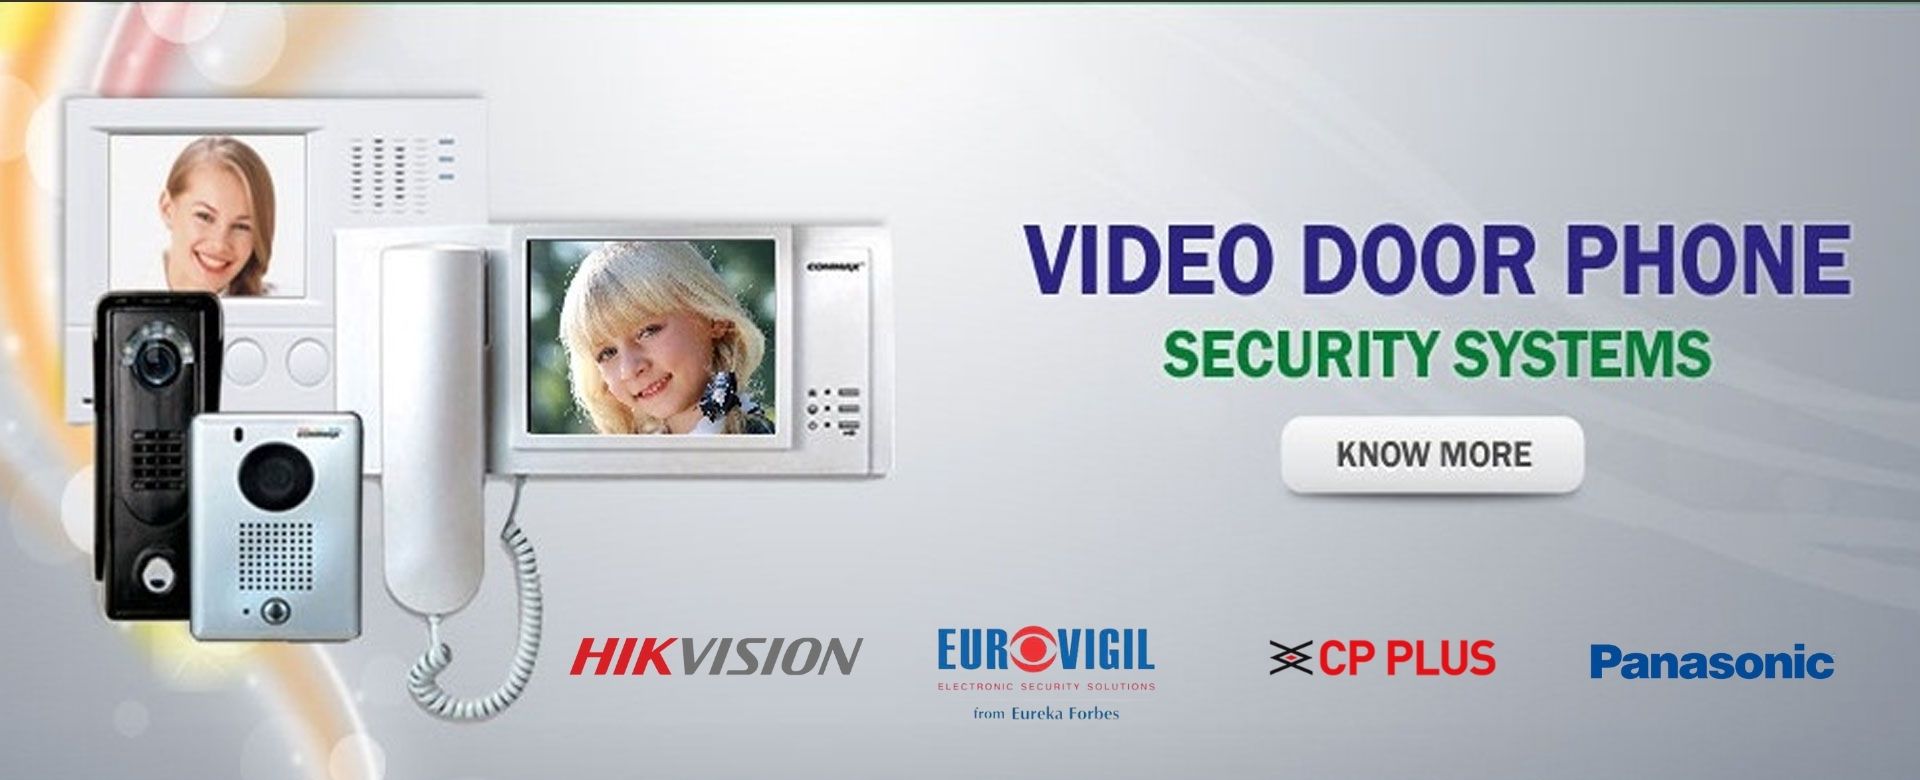 eurovigil video door phone delhi